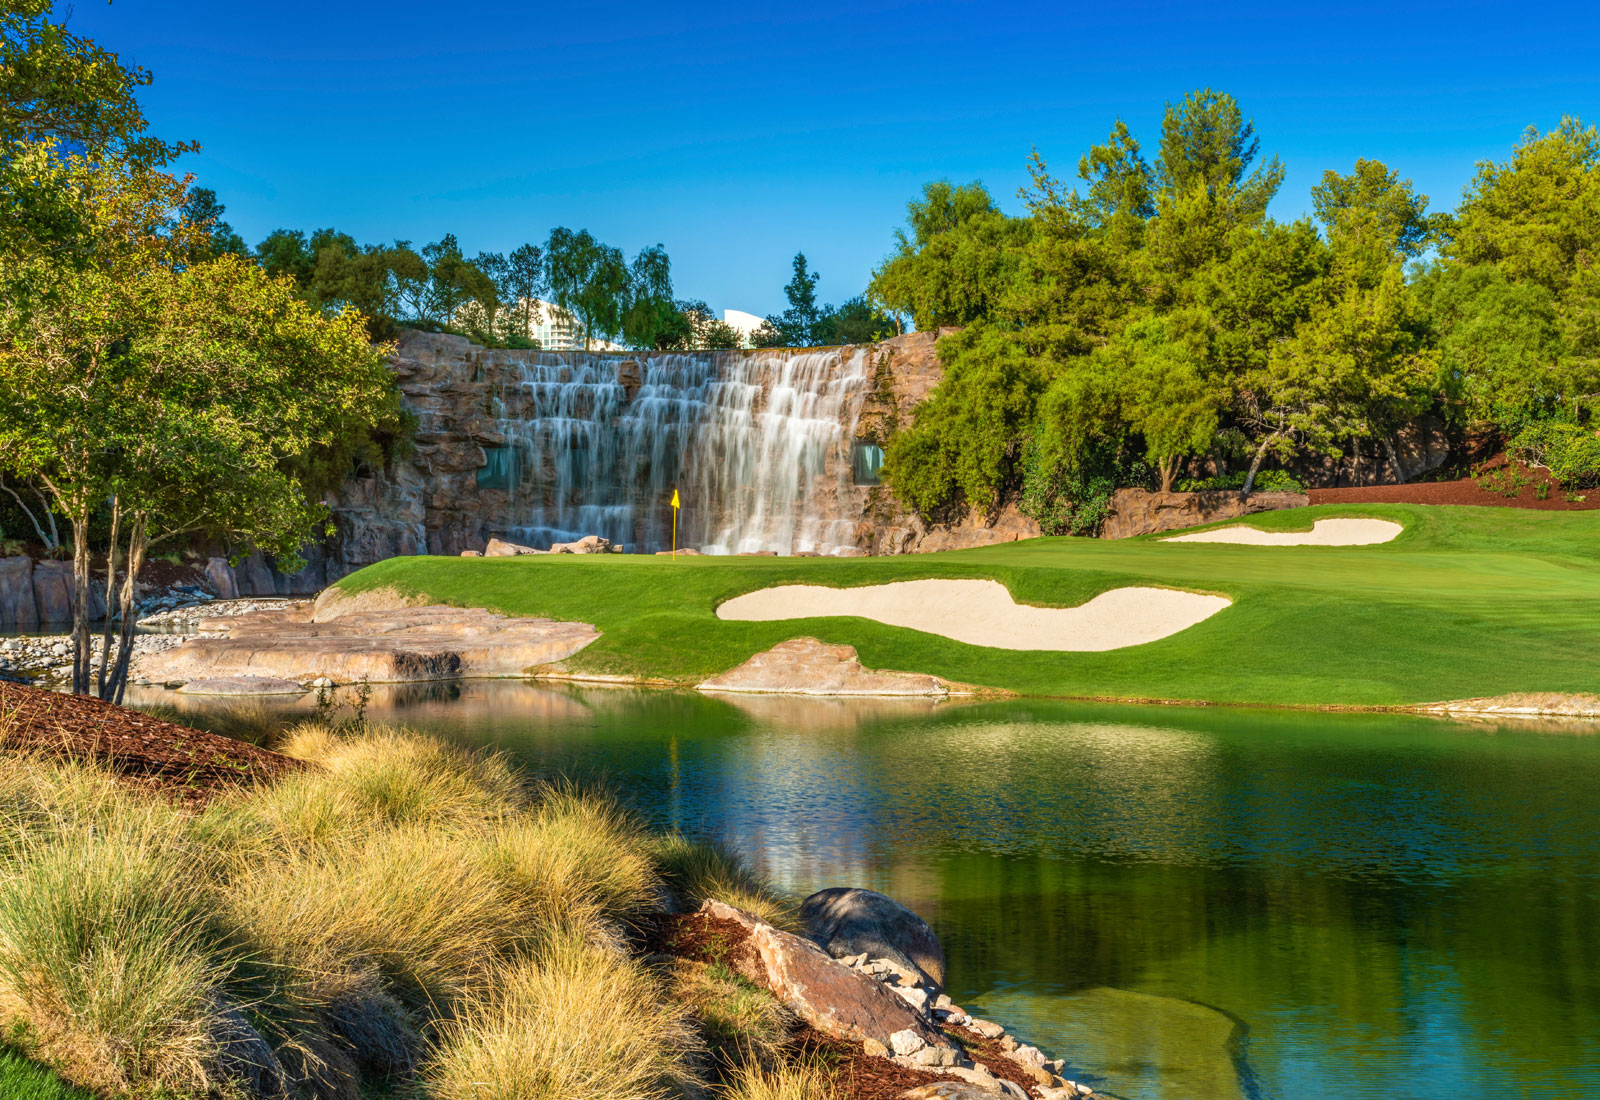 Wynn Las Vegas Golf Course